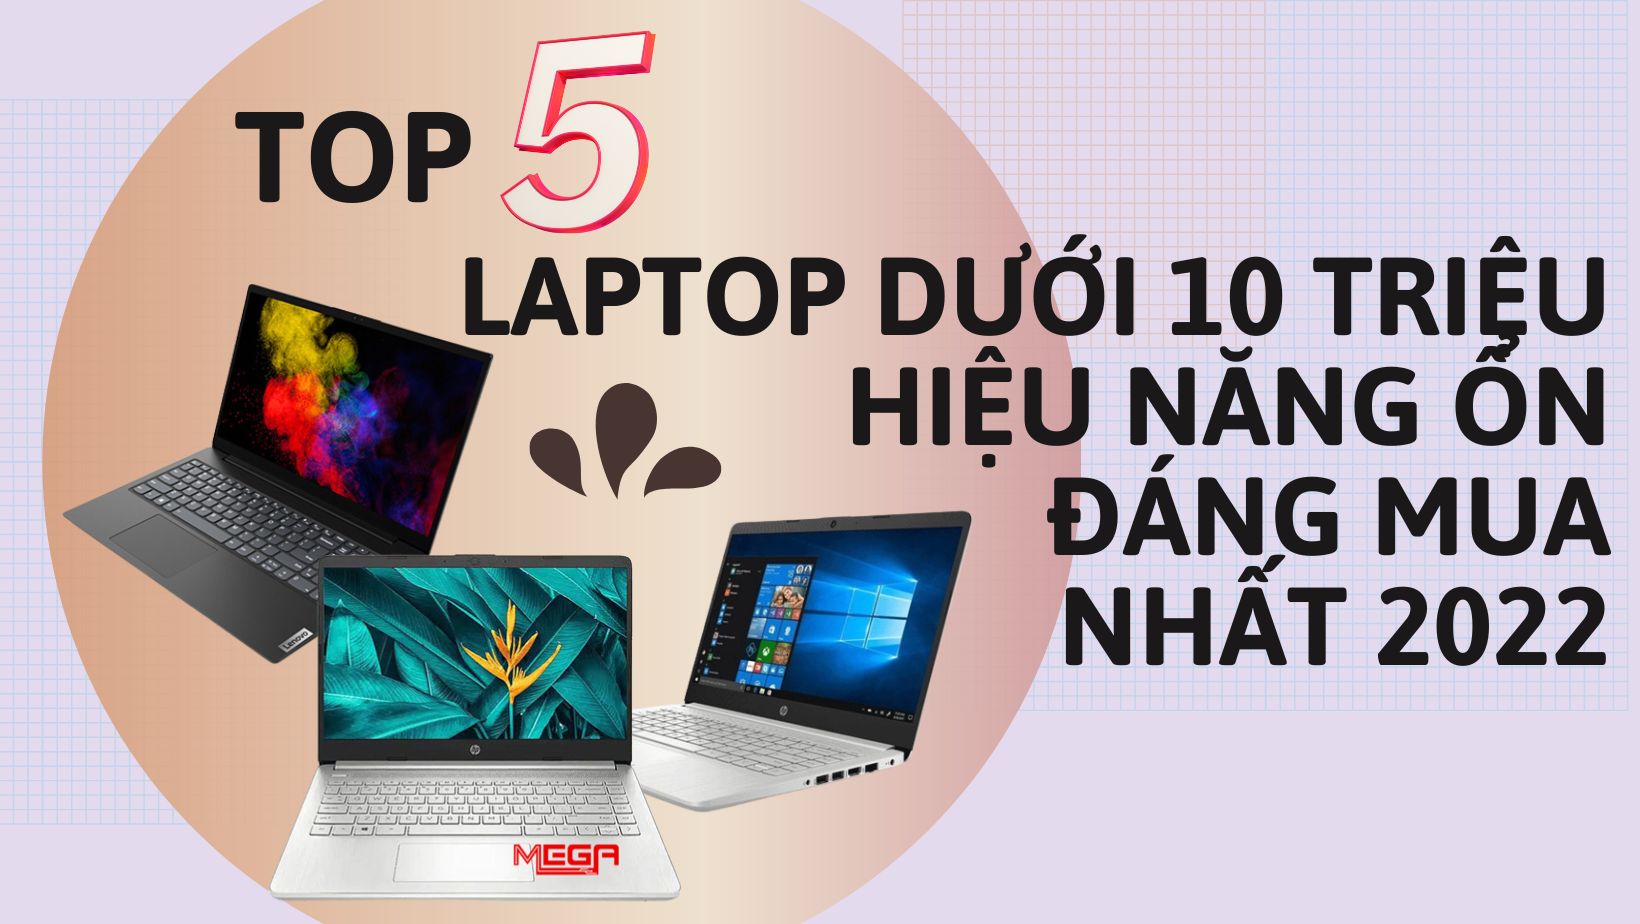 Top 5 laptop dưới 10 triệu hiệu năng ổn, đáng mua nhất 2023